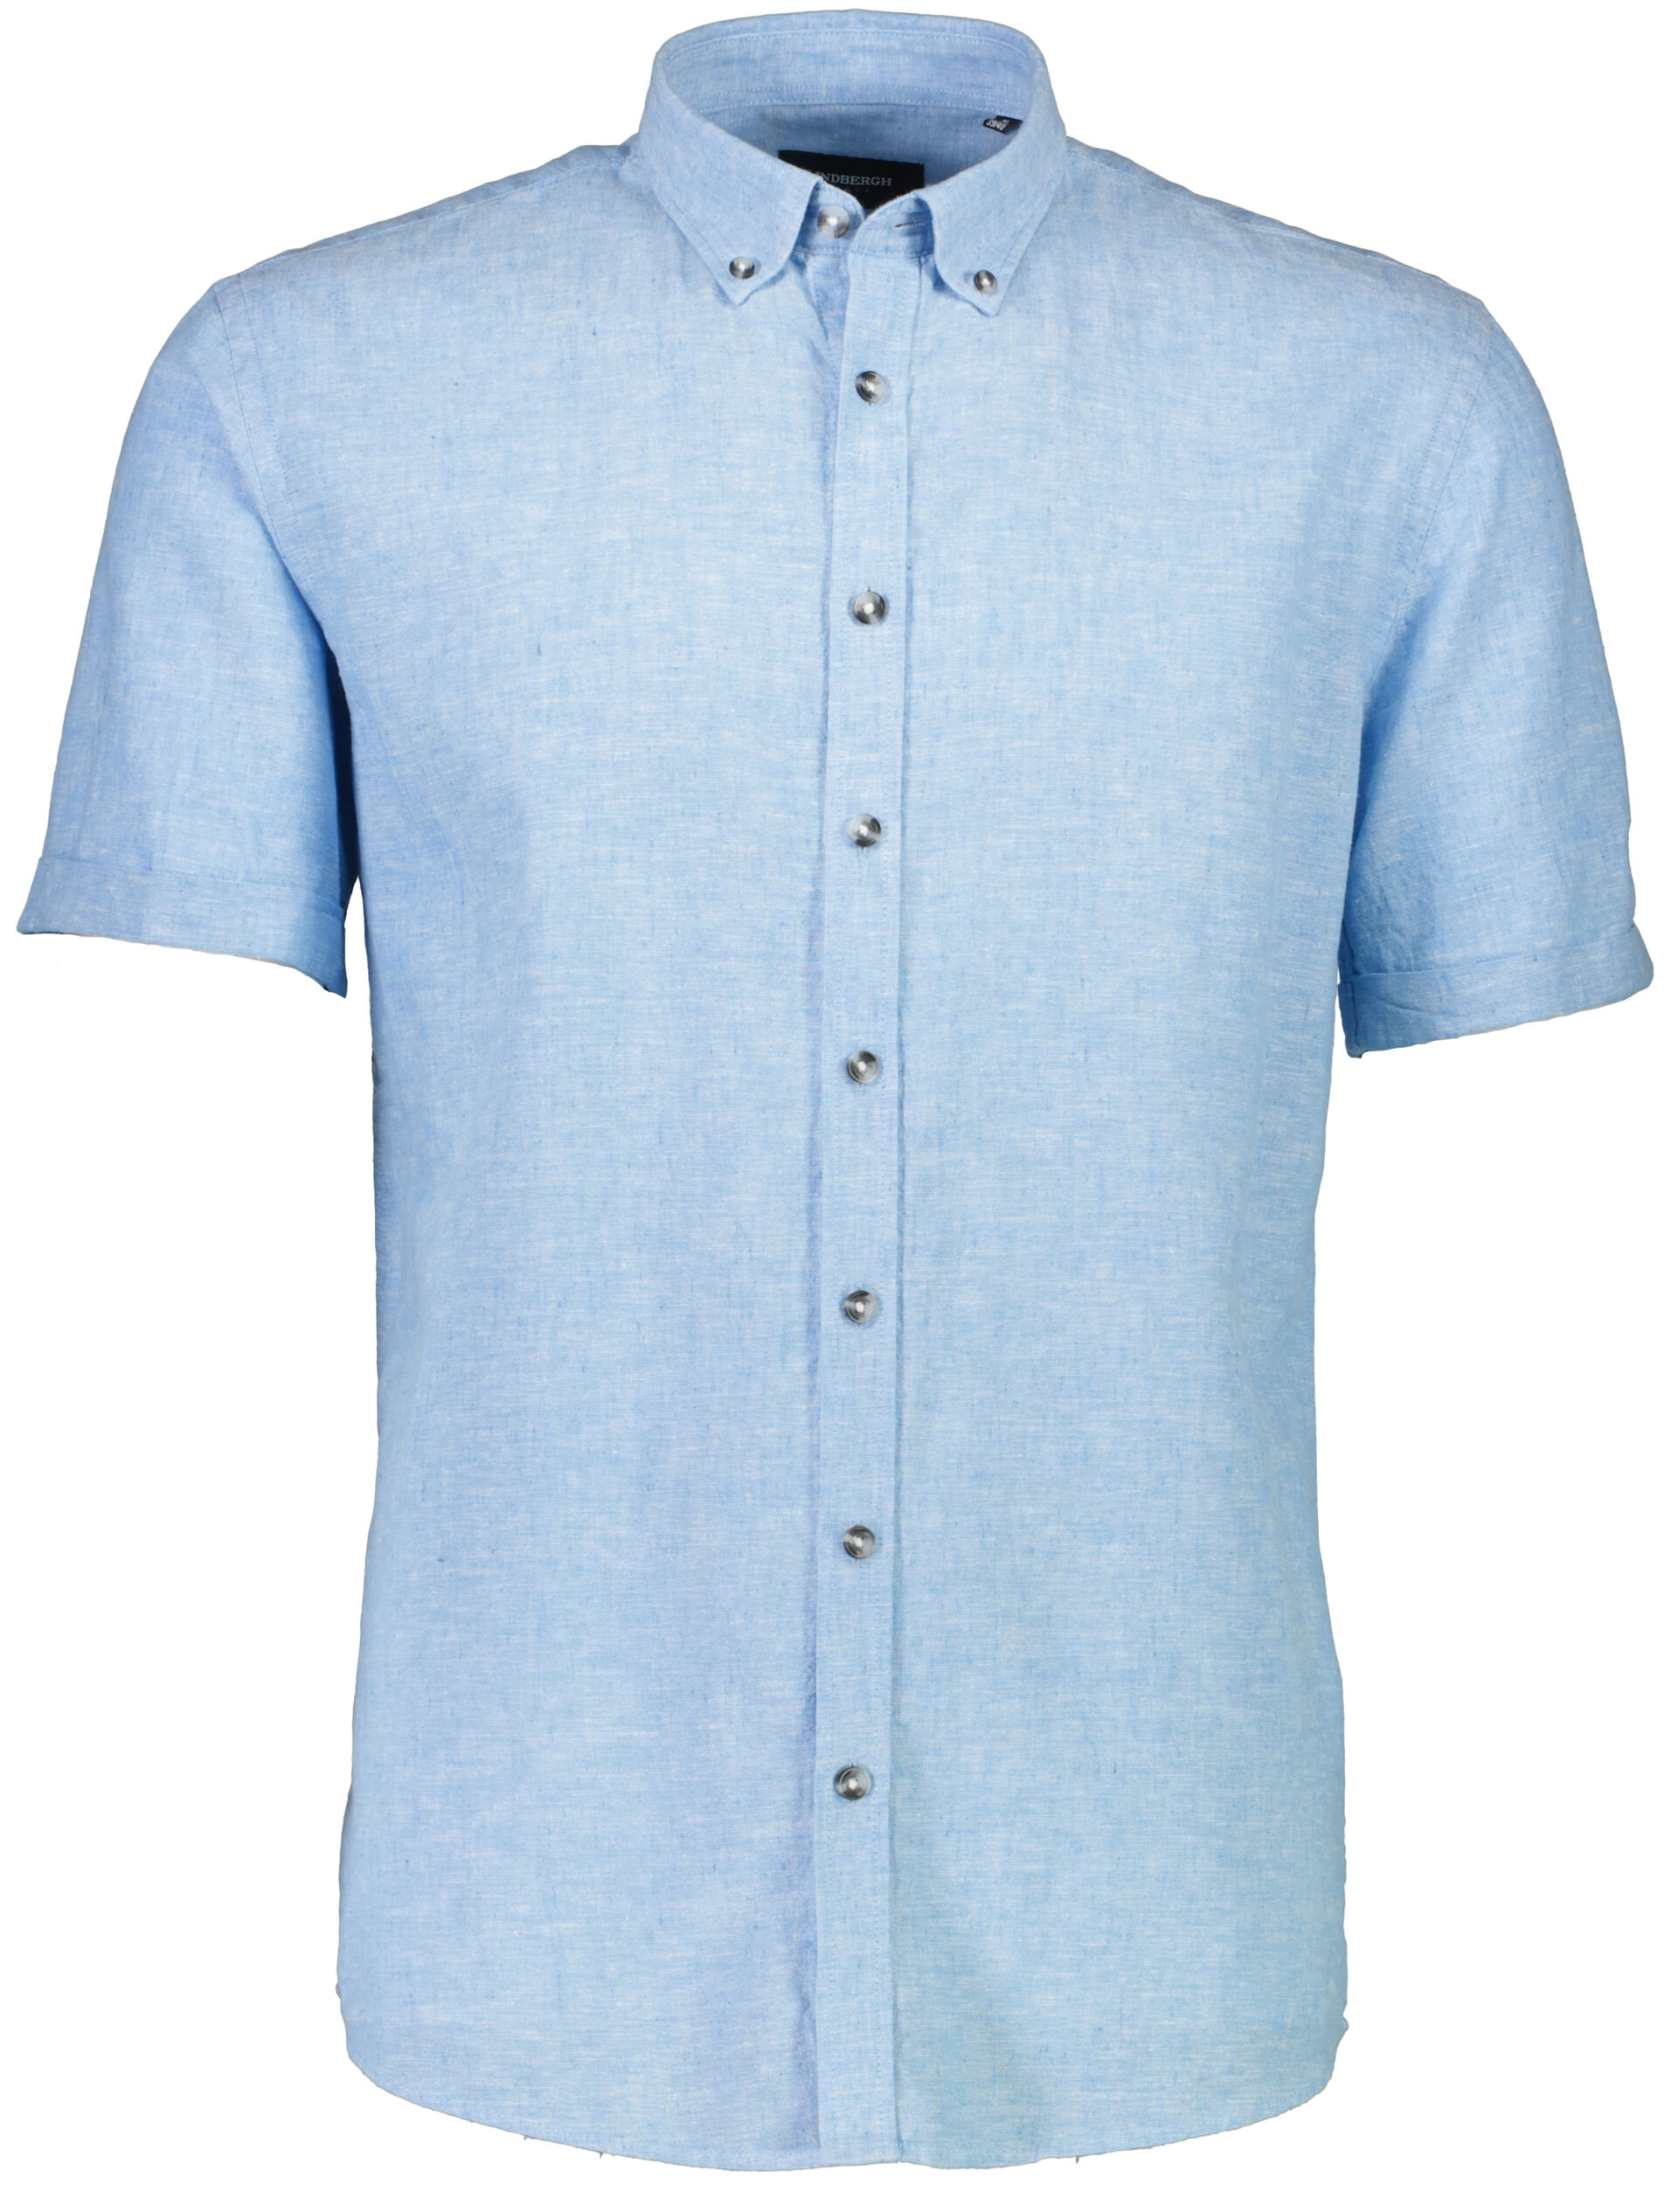 Linen shirt Linen shirt Blue 30-210077